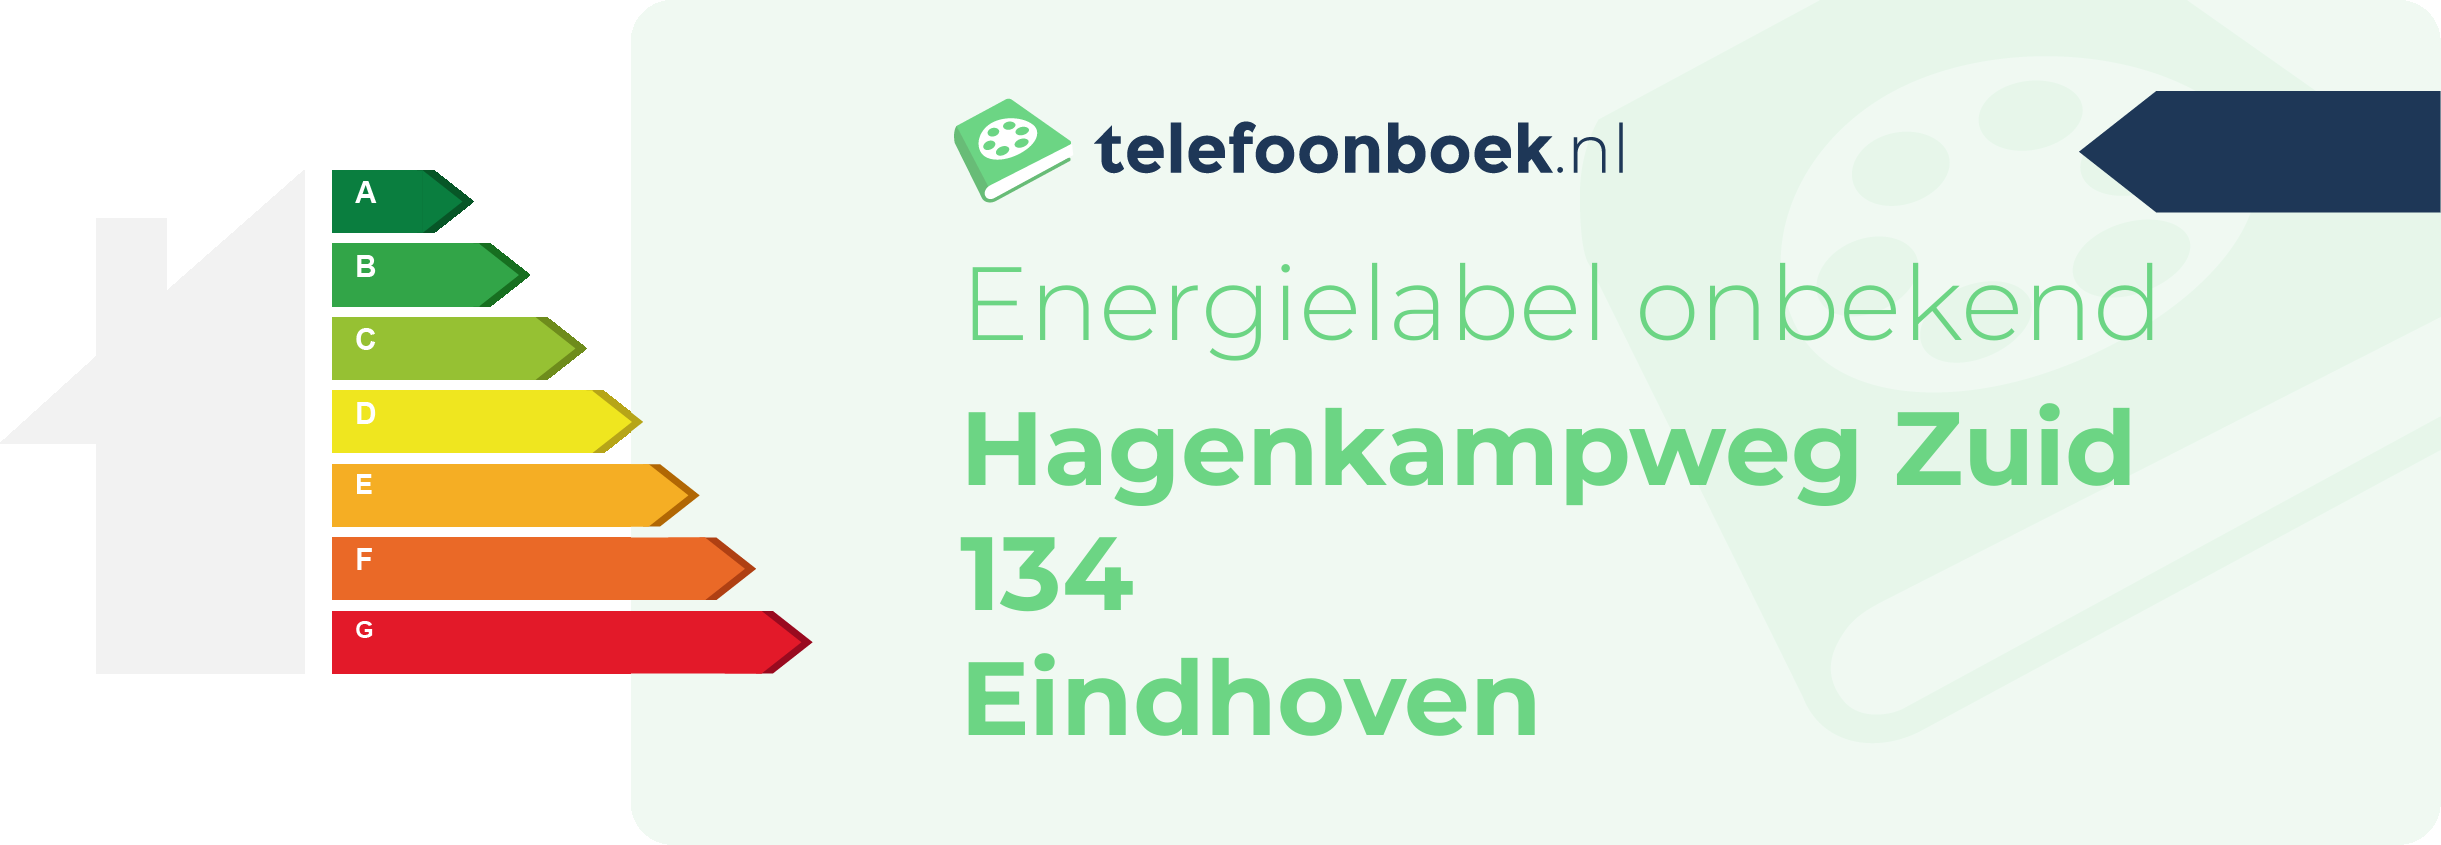 Energielabel Hagenkampweg Zuid 134 Eindhoven